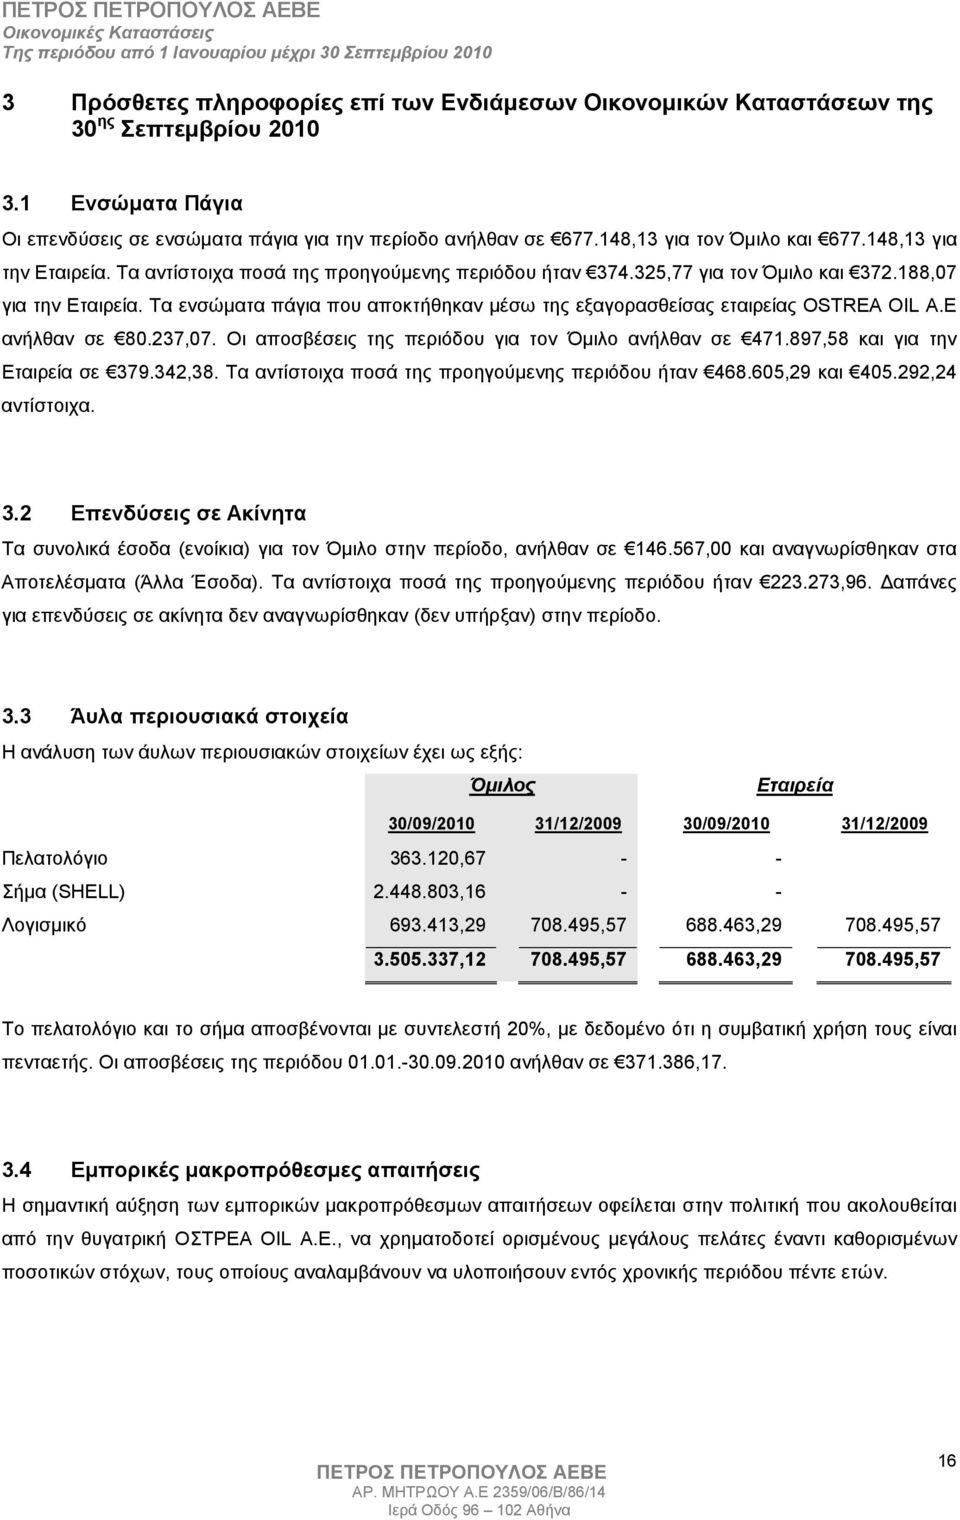 Τα ενσώµατα πάγια που αποκτήθηκαν µέσω της εξαγορασθείσας εταιρείας OSTREA OIL A.E ανήλθαν σε 80.237,07. Οι αποσβέσεις της περιόδου για τον Όµιλο ανήλθαν σε 471.897,58 και για την Εταιρεία σε 379.